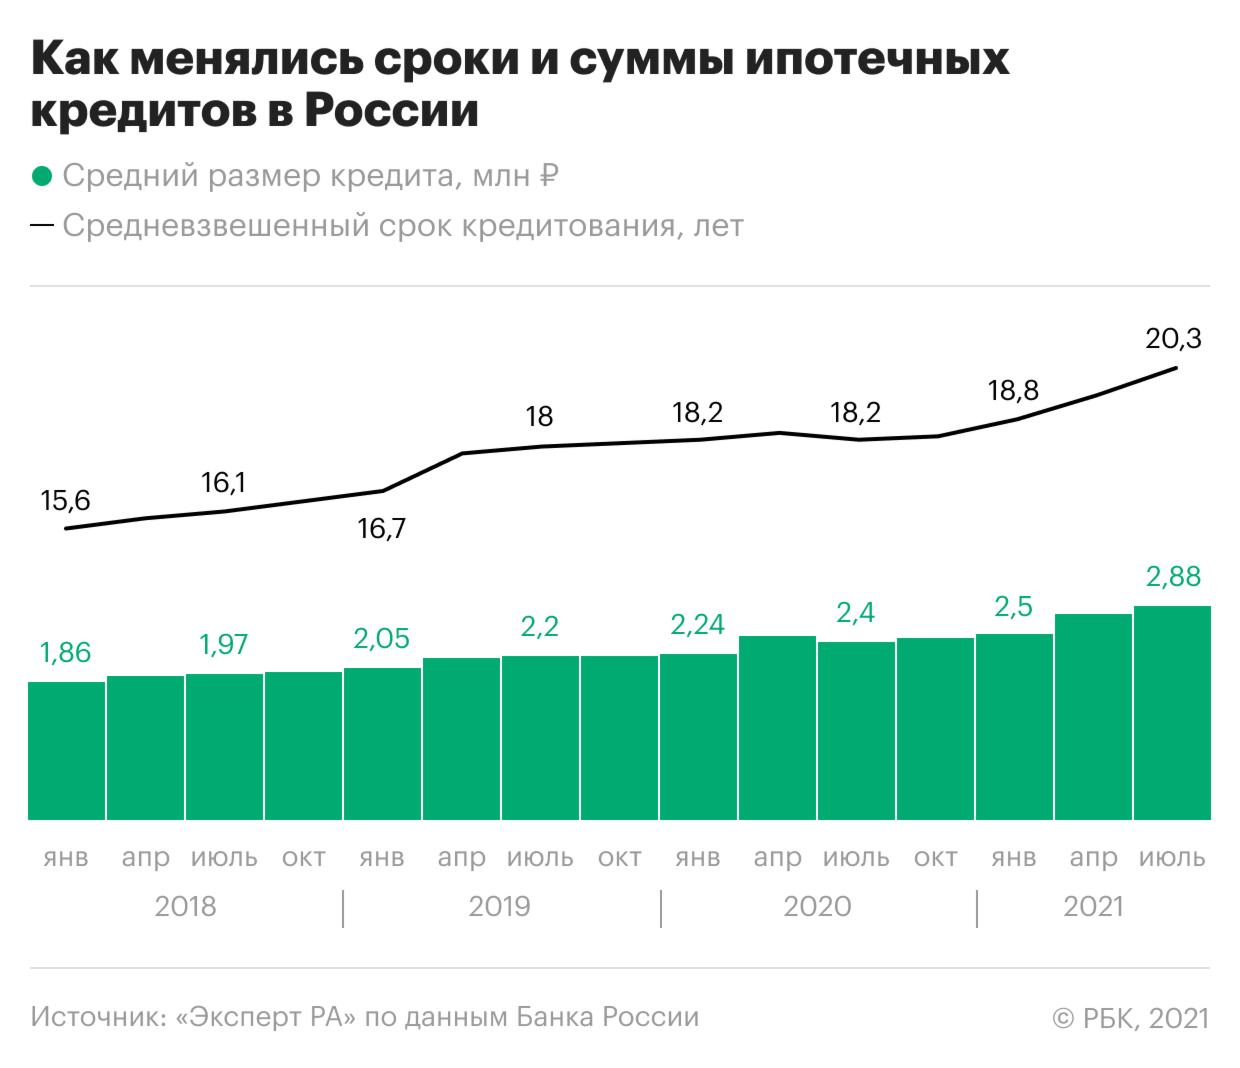 Как средний ипотечный кредит в России вырос до ₽2,8 млн. Инфографика